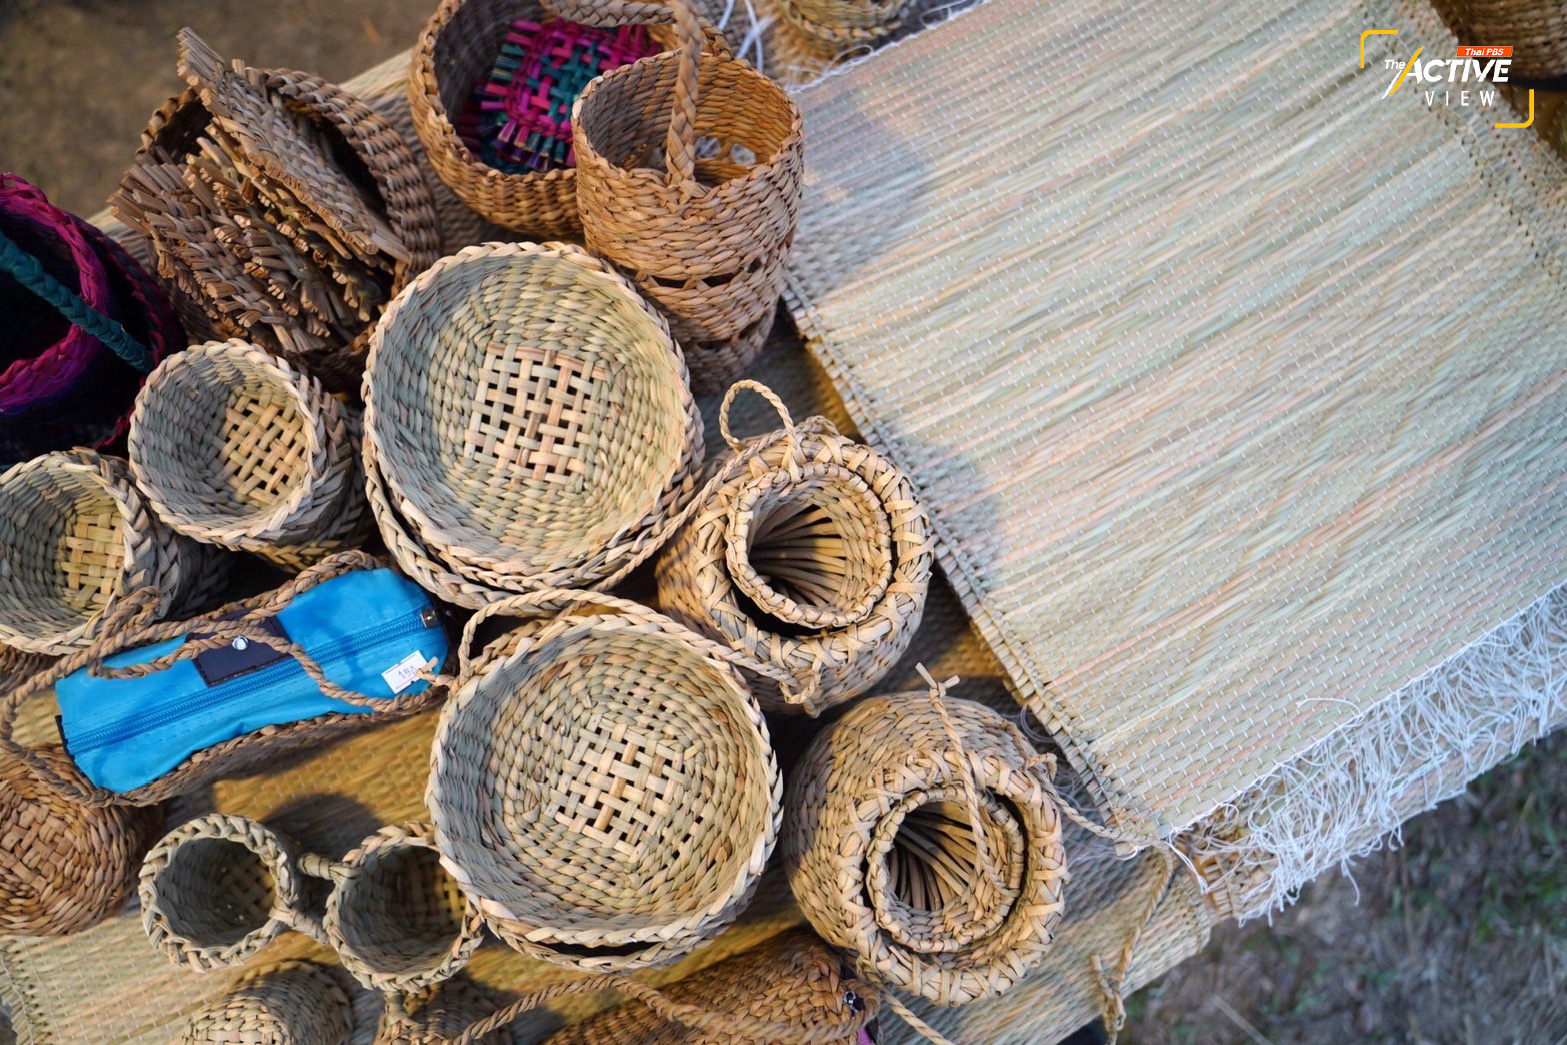 ‘กกไตหย่า’ ของแรร์ไอเทม หนึ่งเดียวในไทย 
.
เสื่อหลายขนาด และข้าวของเครื่องใช้ที่สานจาก ‘กกไตหย่า’ ที่มีแค่เพียงชุมชนชาติพันธุ์ ใน ต.แม่ไร่ อ.แม่จันทร์ จ.เชียงราย ถือเป็นของดีหายากจากกลุ่มชาติพันธุ์ไตหย่า จนกลายเป็นอีกจุดน่าสนใจภายในงานฯ 
.
‘อัญชลี อินต๊ะวงค์’ ตัวแทนกลุ่มแปรรูปเส้นกกไตหย่า มองถึงโอกาส และความหวังที่หลายภาคส่วนจะได้ร่วมกันพัฒนา ยกระดับแบรนด์ชาติพันธุ์จากลวดลายดั้งเดิมที่ทำอยู่ เพื่อให้ลูกค้ามีทางเลือกที่หลากหลาย หรือปรับเปลี่ยนให้ตอบโจทย์ความต้องการคนเมือง และเป็นที่รู้จักมากยิ่งขึ้น
